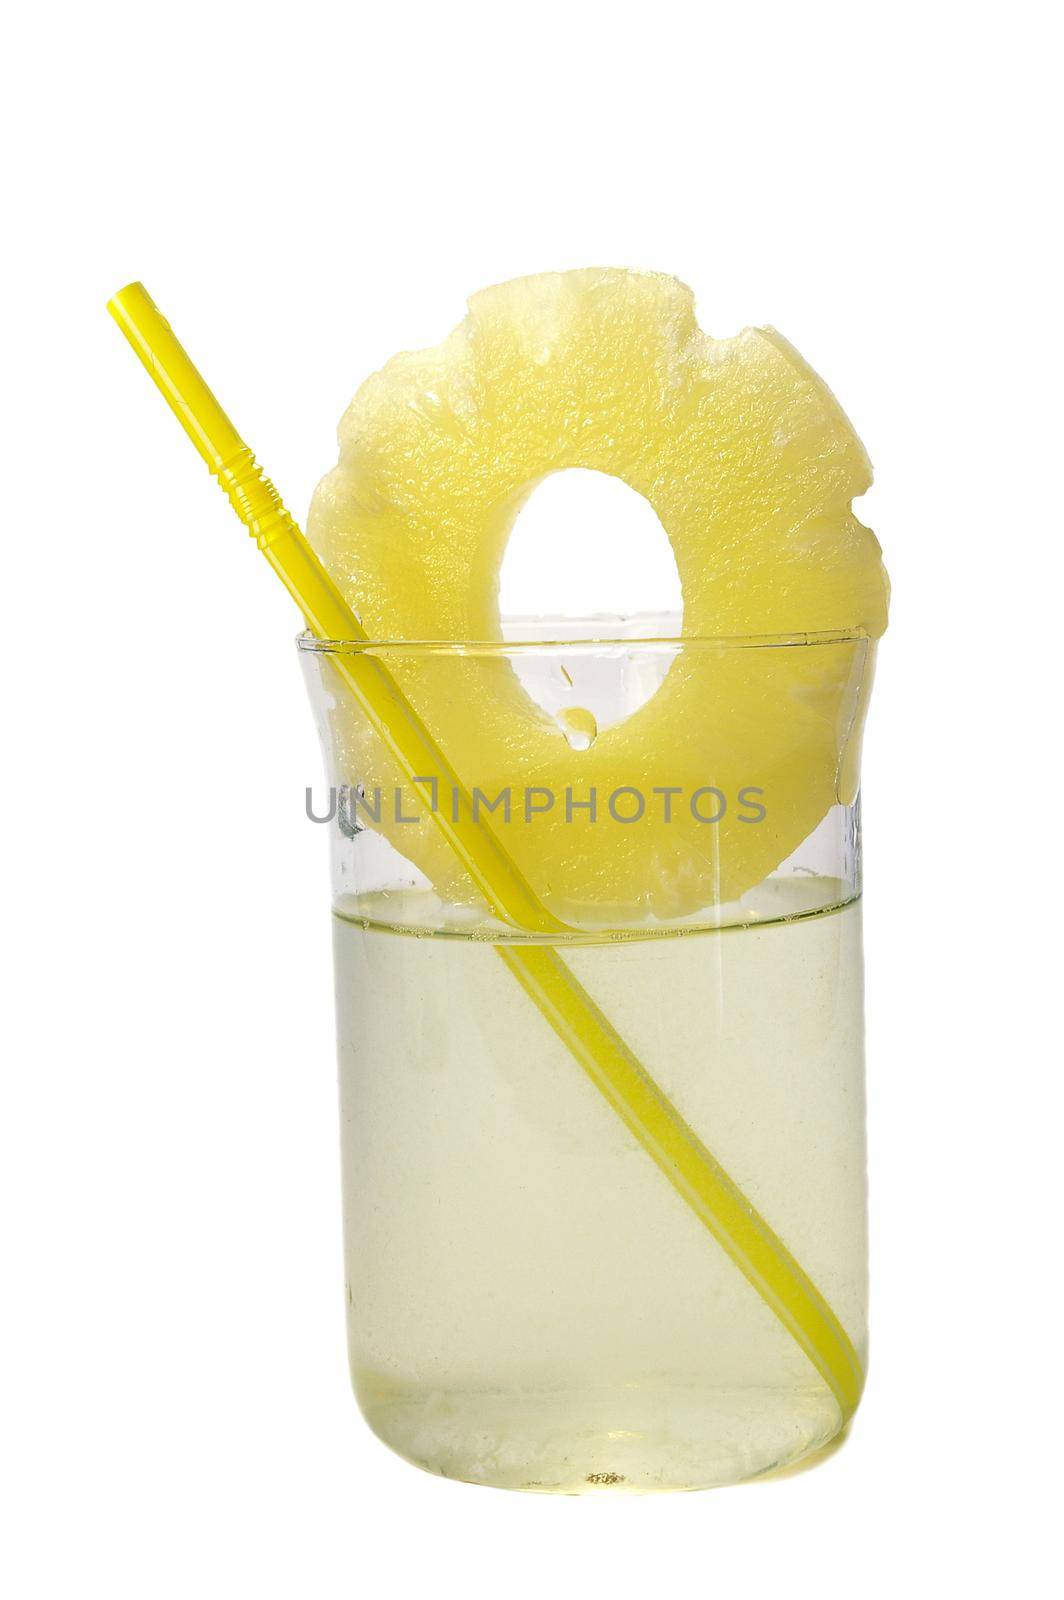 Pineapple juice in the glass by tan4ikk1